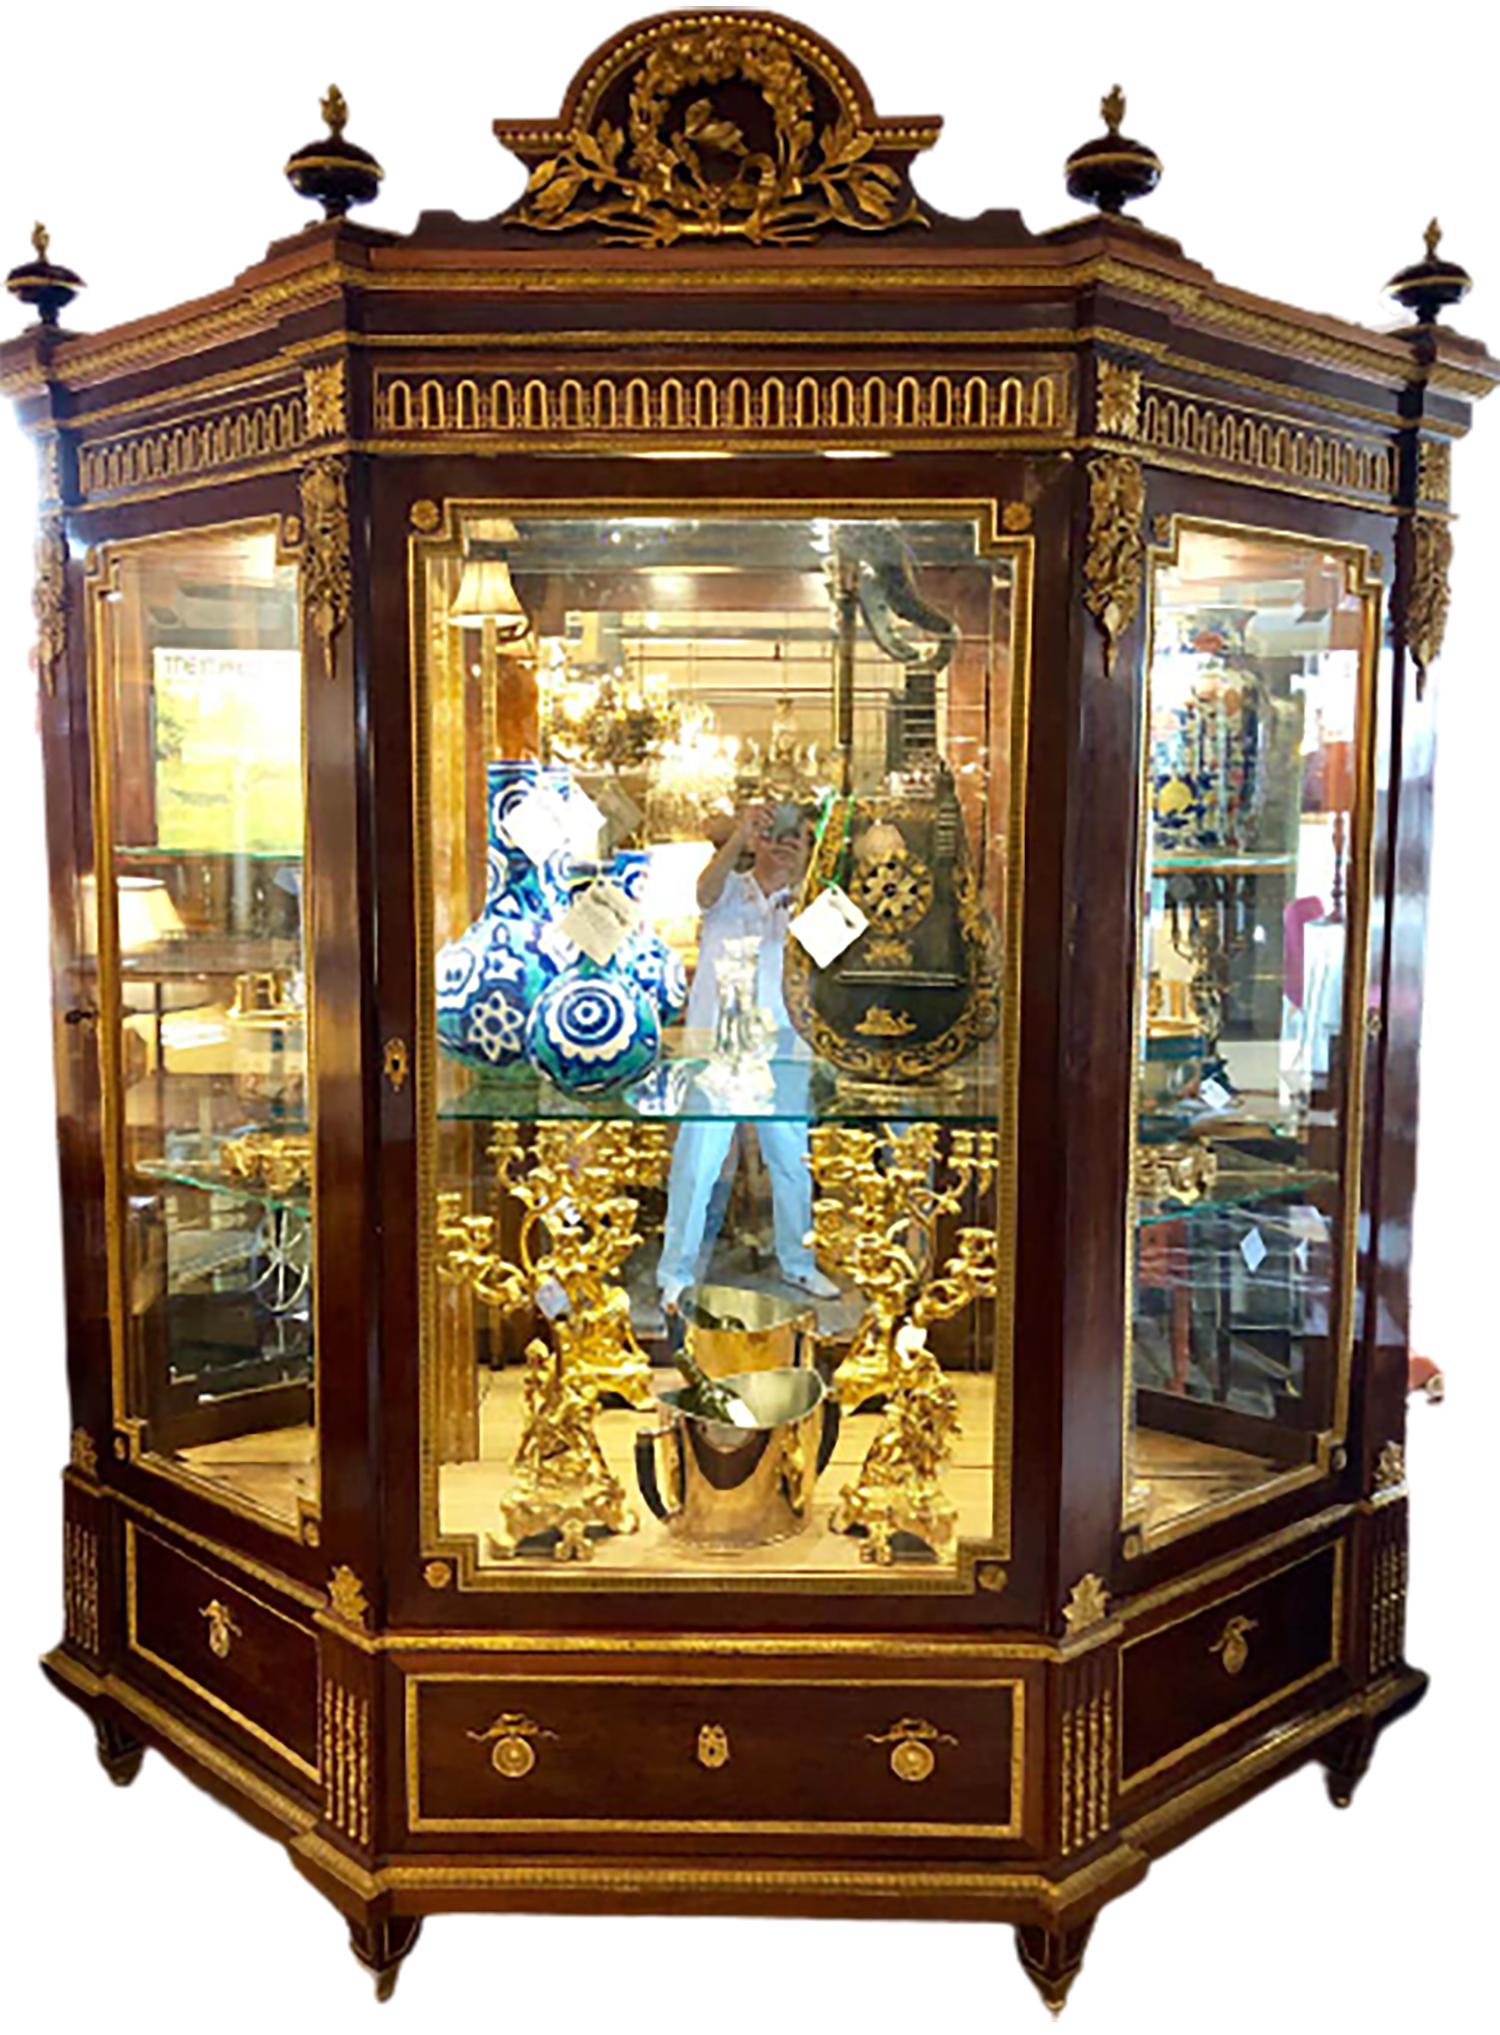 Mahagoni-Vitrinenschrank aus dem 19. Jahrhundert mit spektakulären Bronzebeschlägen, gestempelt von Grohe. Dieser wichtige und beeindruckende Schrank im Louis XVI-Stil ist überlebensgroß und kann in jedem Raum oder Büro aufgestellt werden. Die